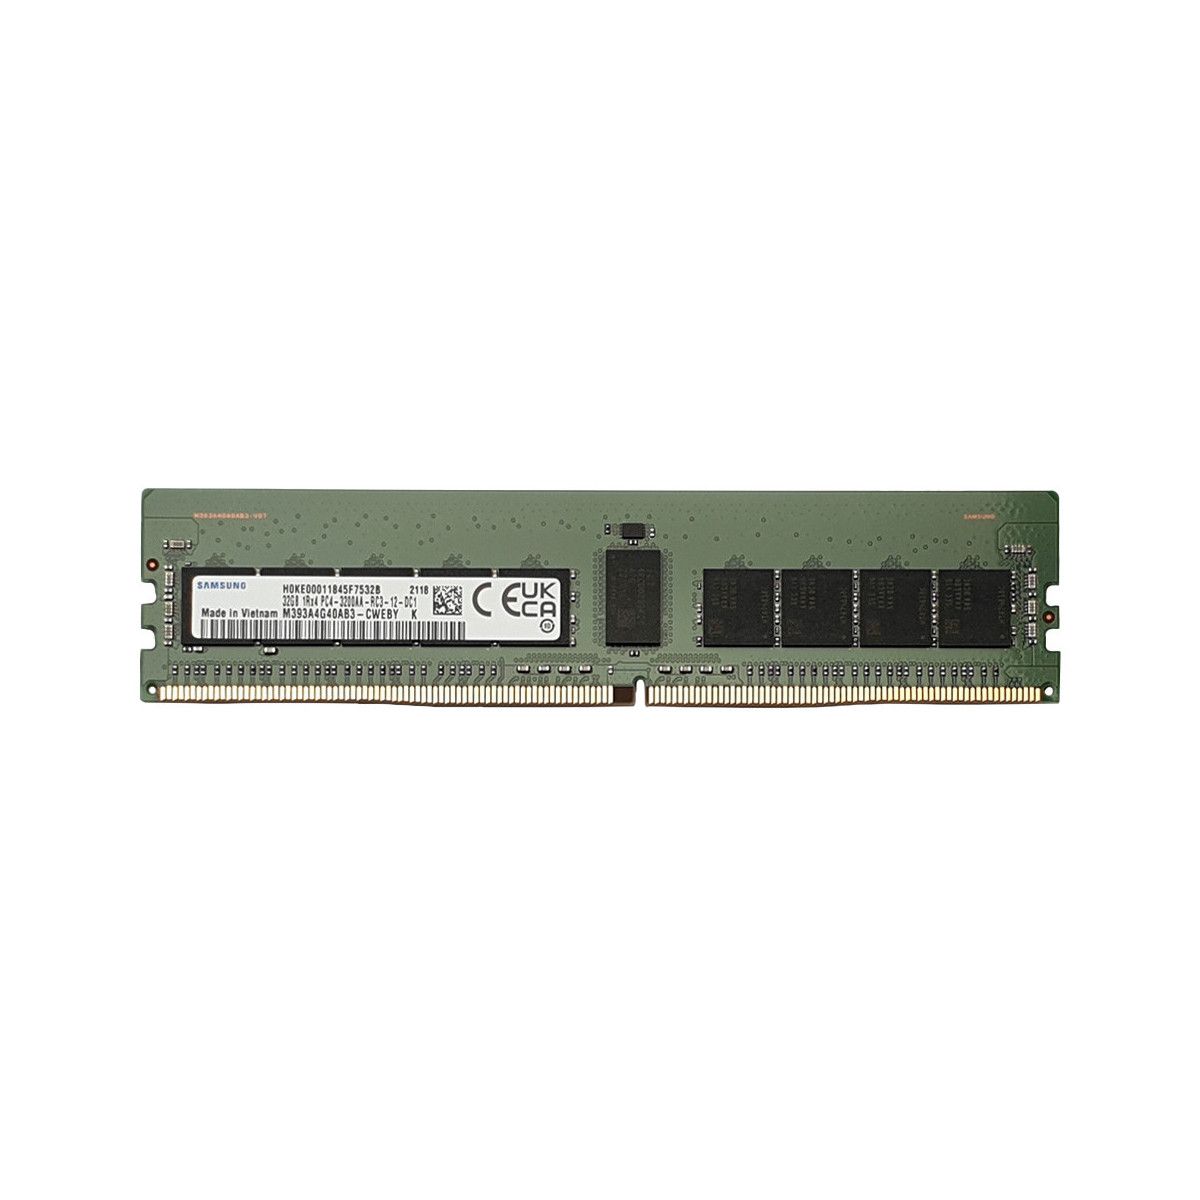 UCS-MR-X32G1RW-MS - Memstar 1x 32GB DDR4-3200 RDIMM PC4-25600R - Mem-Star Compatible OEM Memory 1 - Memstar 